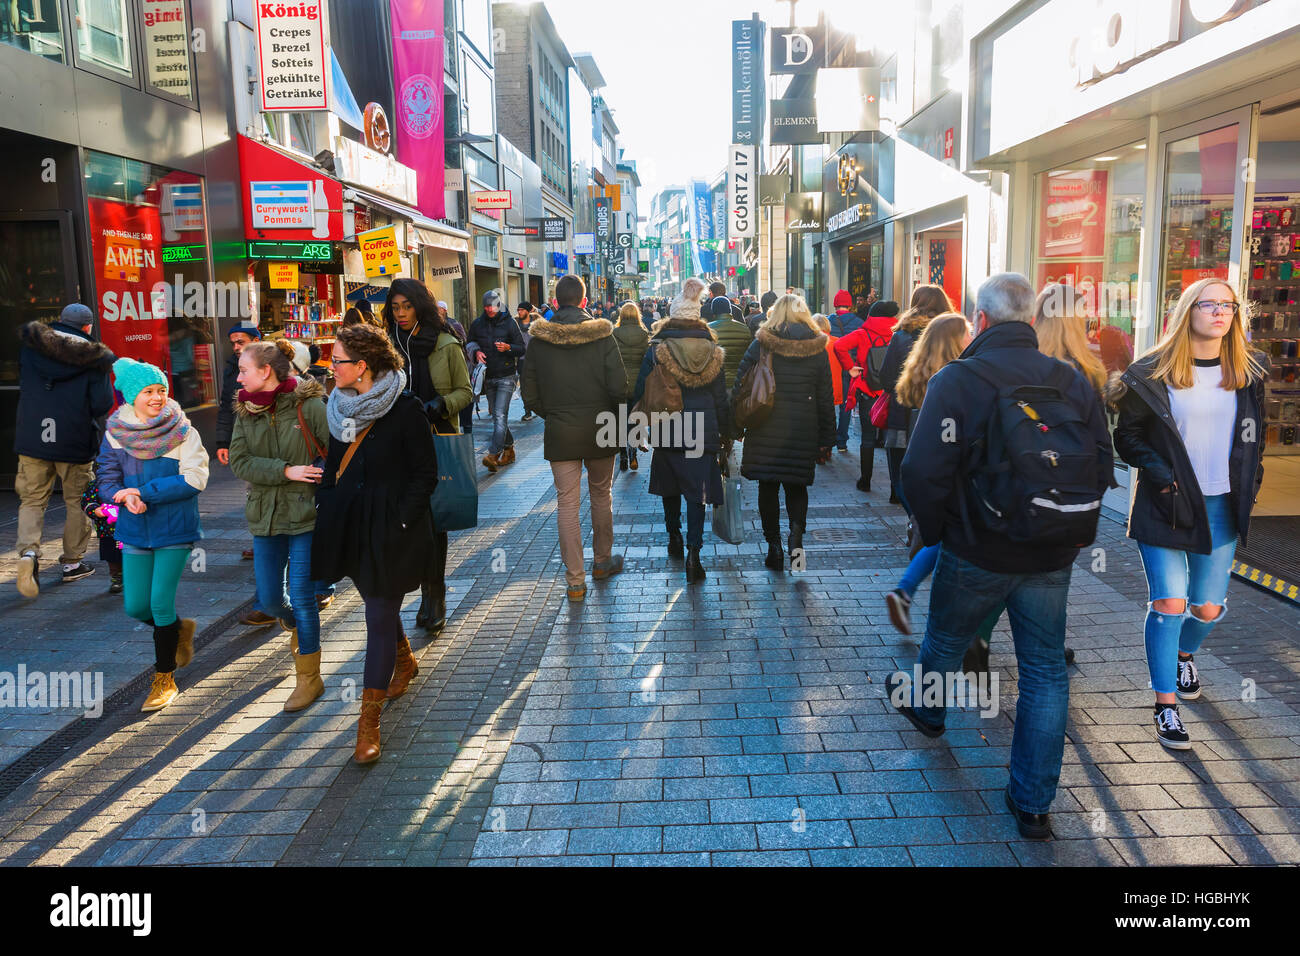 Colonia, Germania - 30 dicembre 2016: strada dello shopping Hohe Strasse con persone non identificate. Si tratta di una strada per lo shopping nella città vecchia e uno dei piazzali Foto Stock